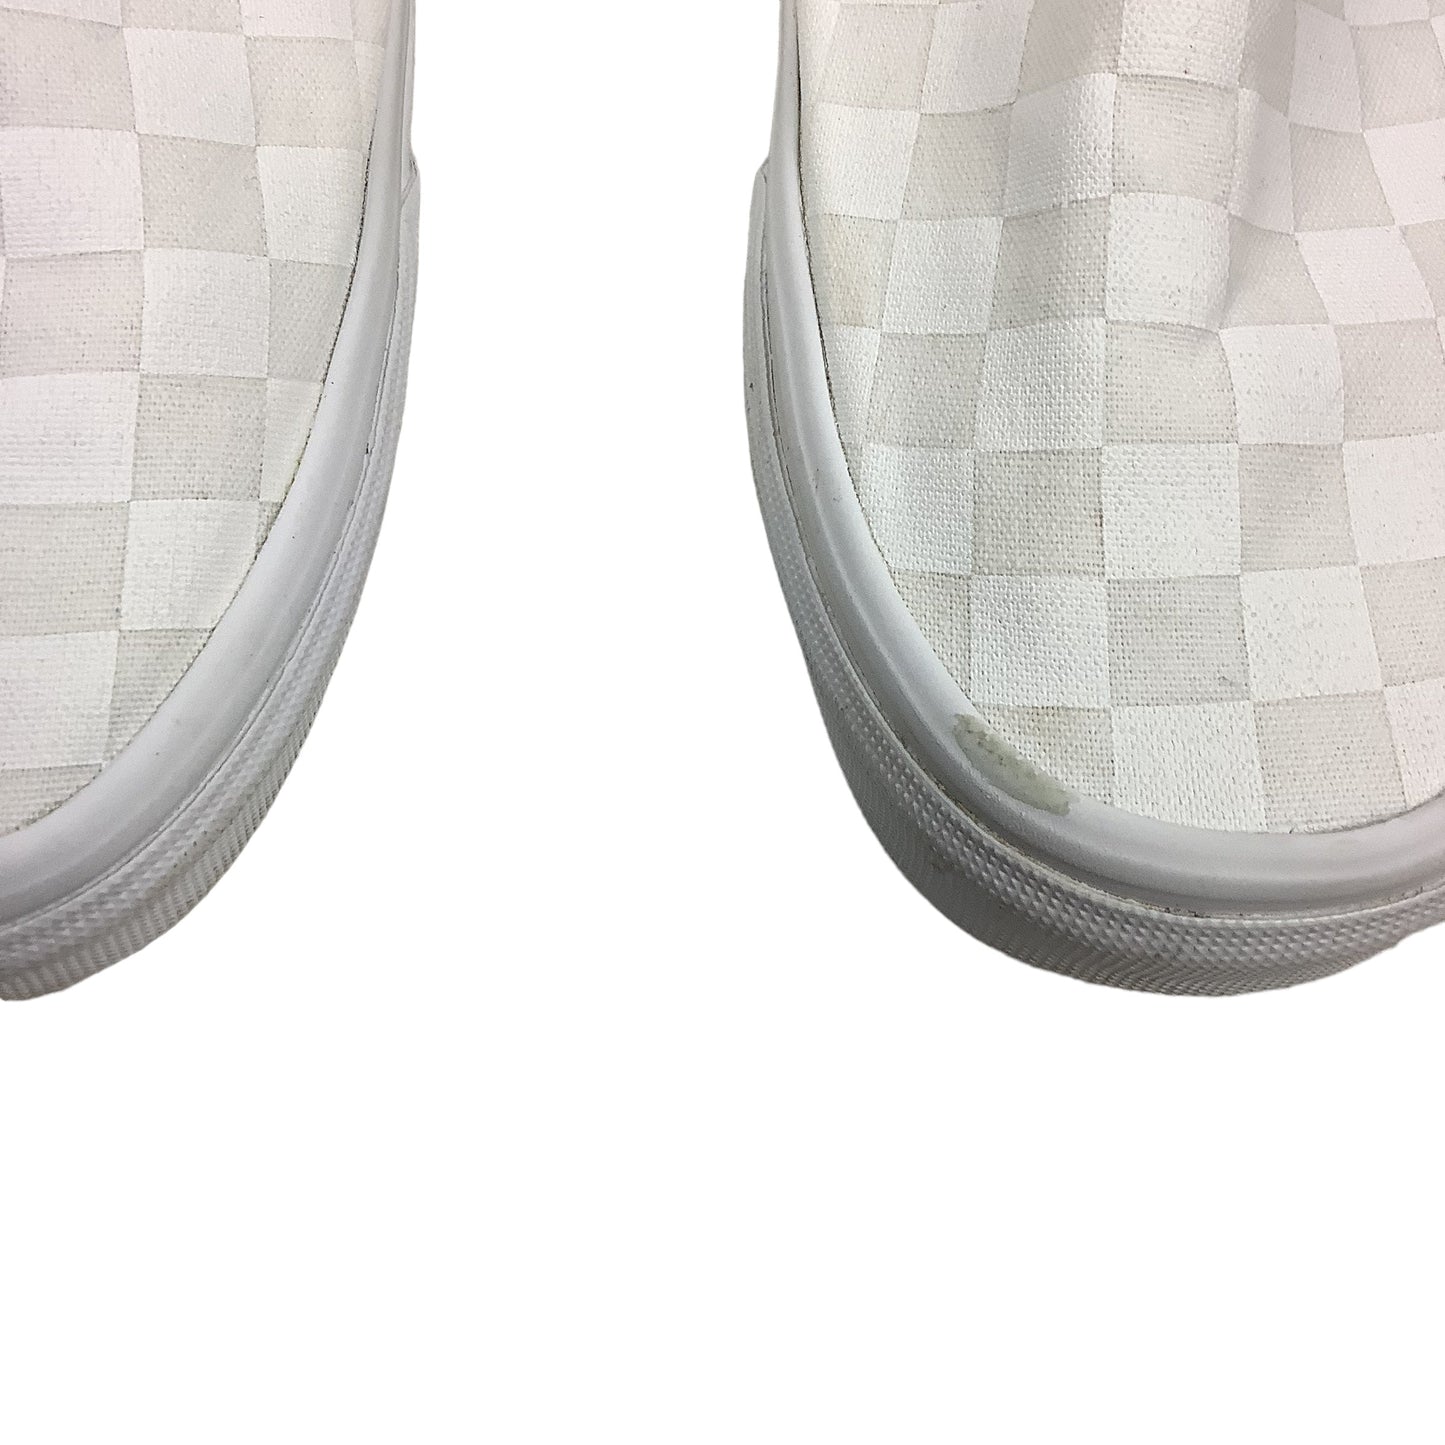 White Shoes Flats Vans, Size 9.5